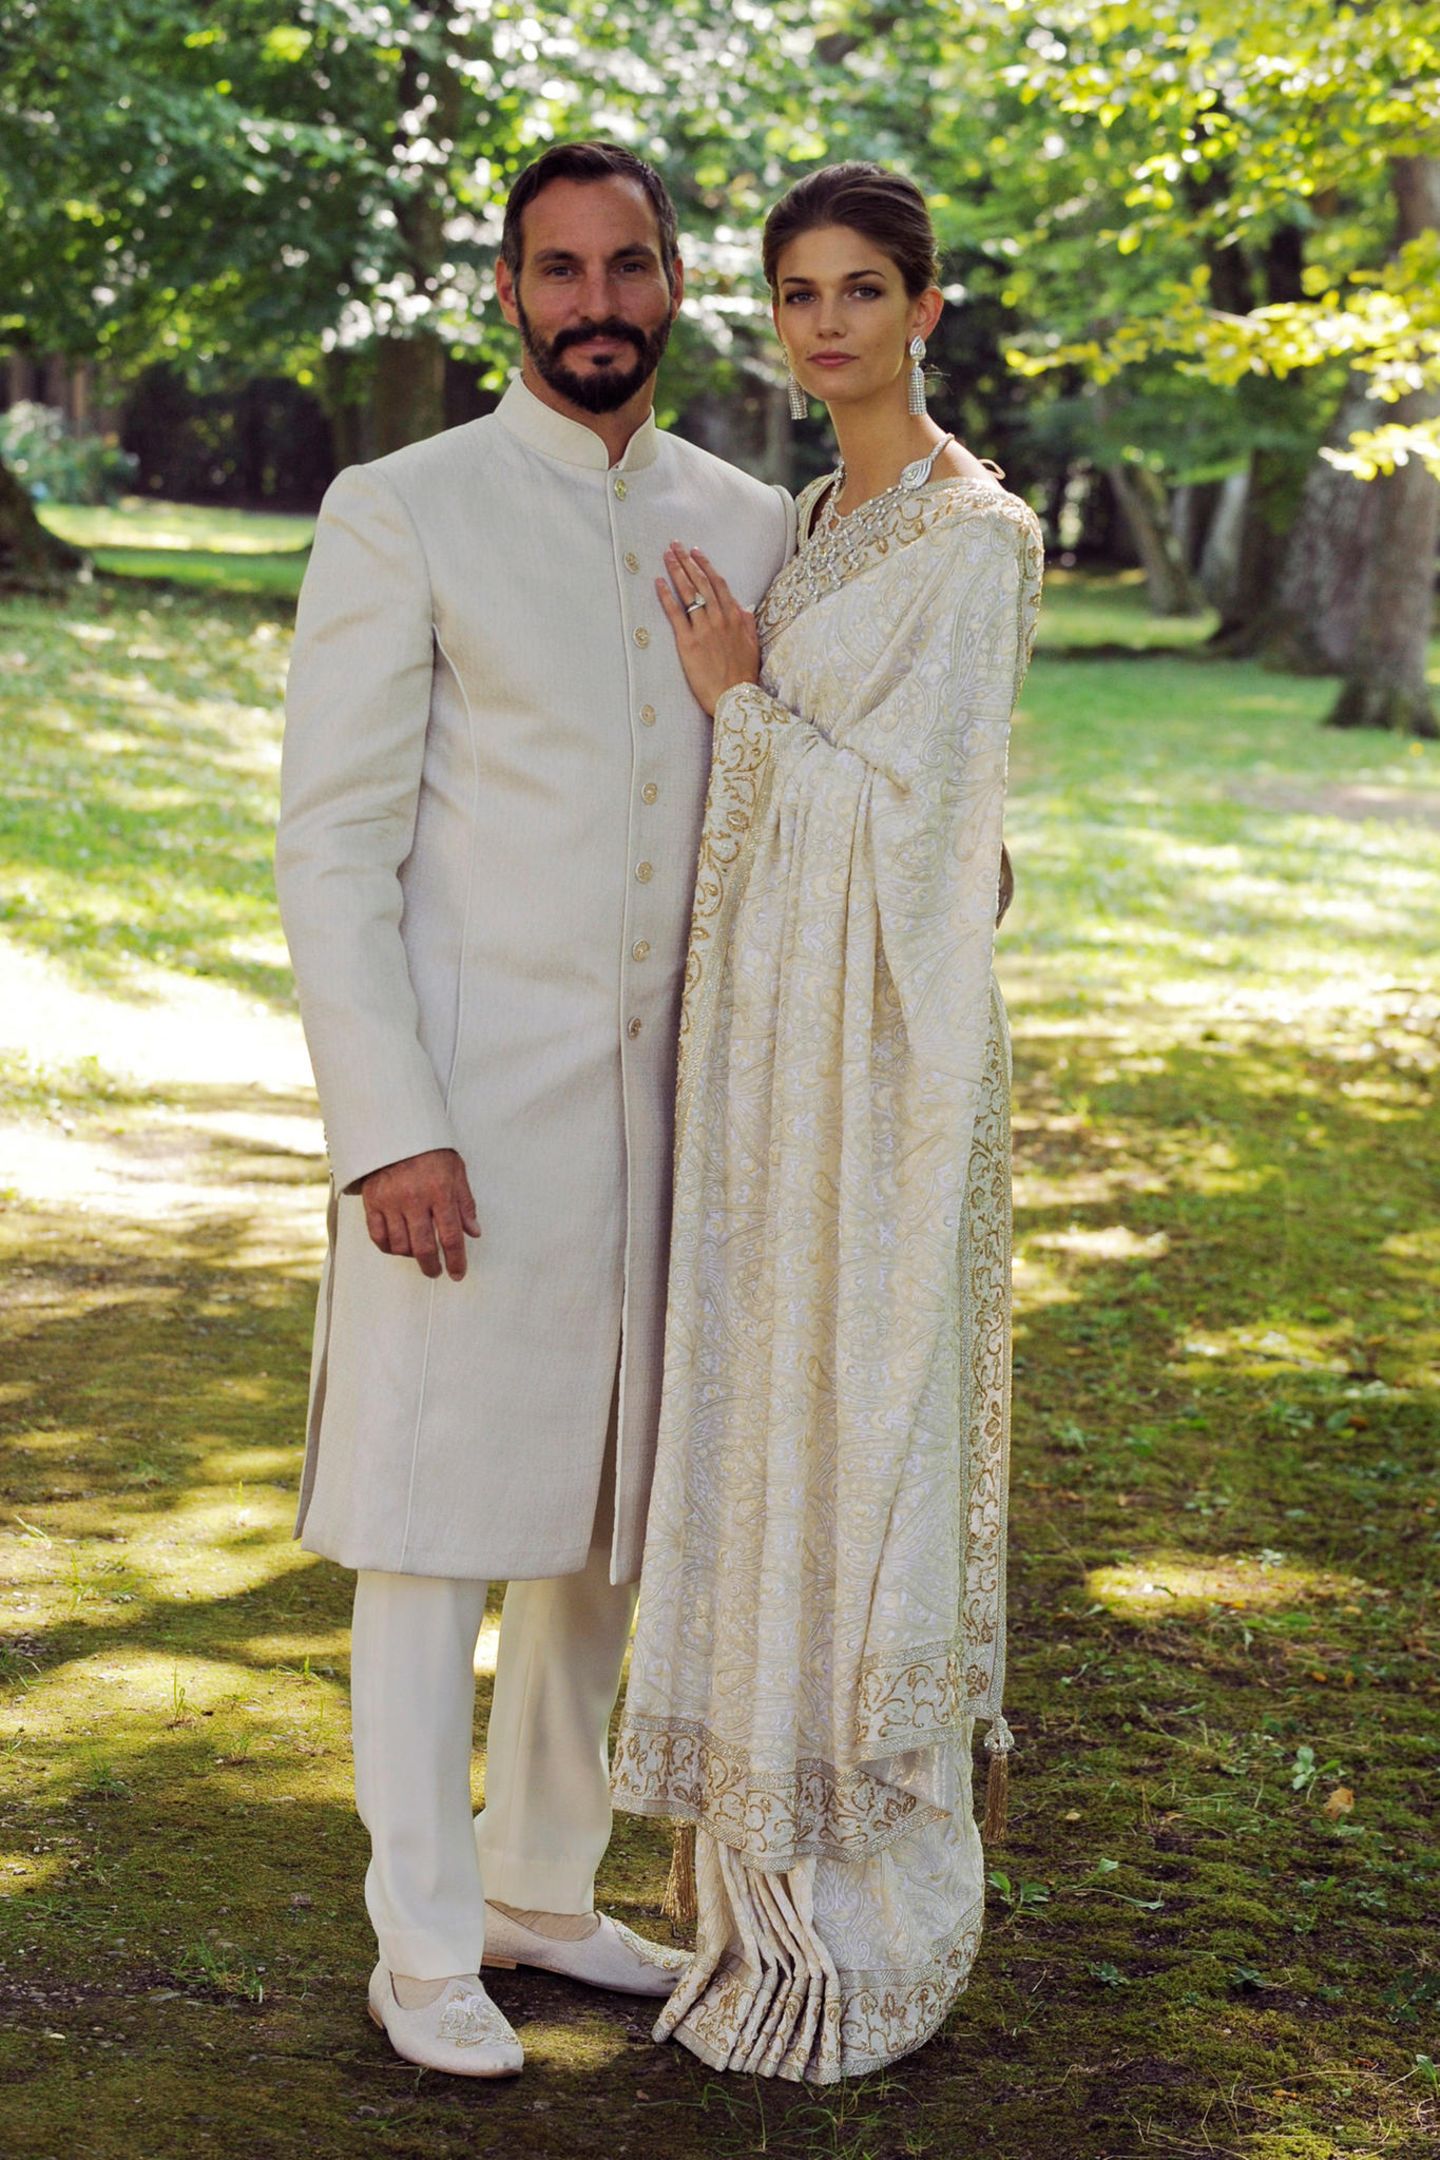 Kendra Spears mit Prinz Rahim Aga Khan in weissen Gewändern